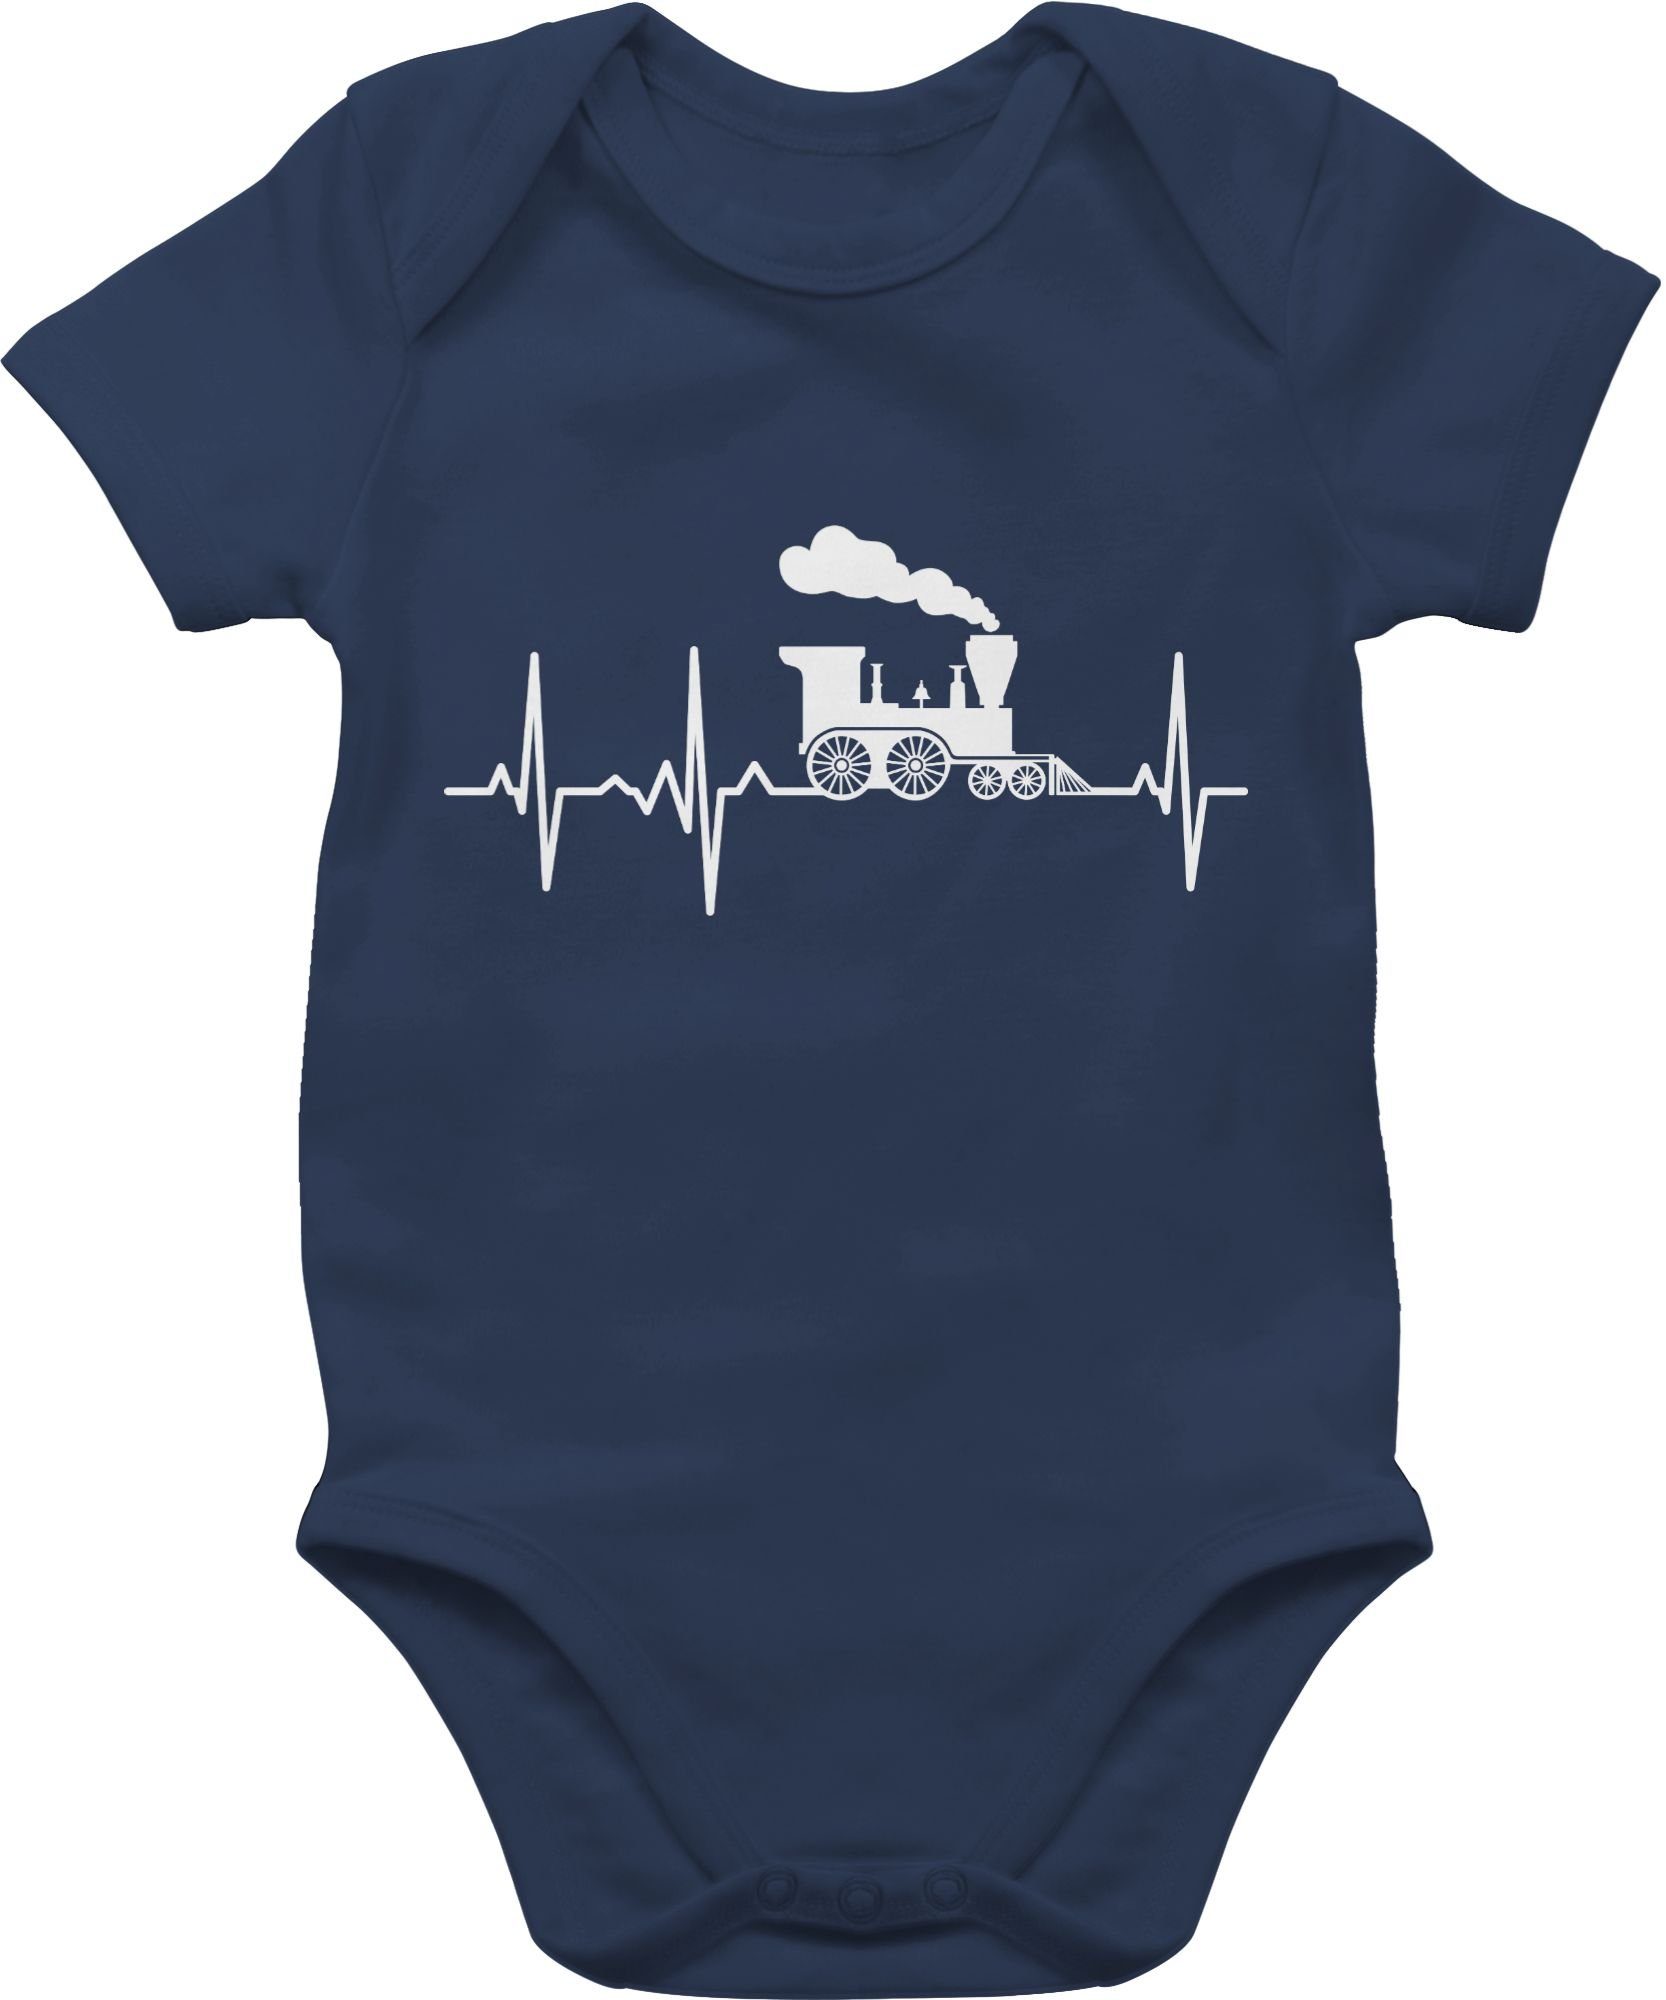 Shirtracer Shirtbody Dampflok Herzschlag weiß Baby Bagger Traktor und Co. 1 Navy Blau